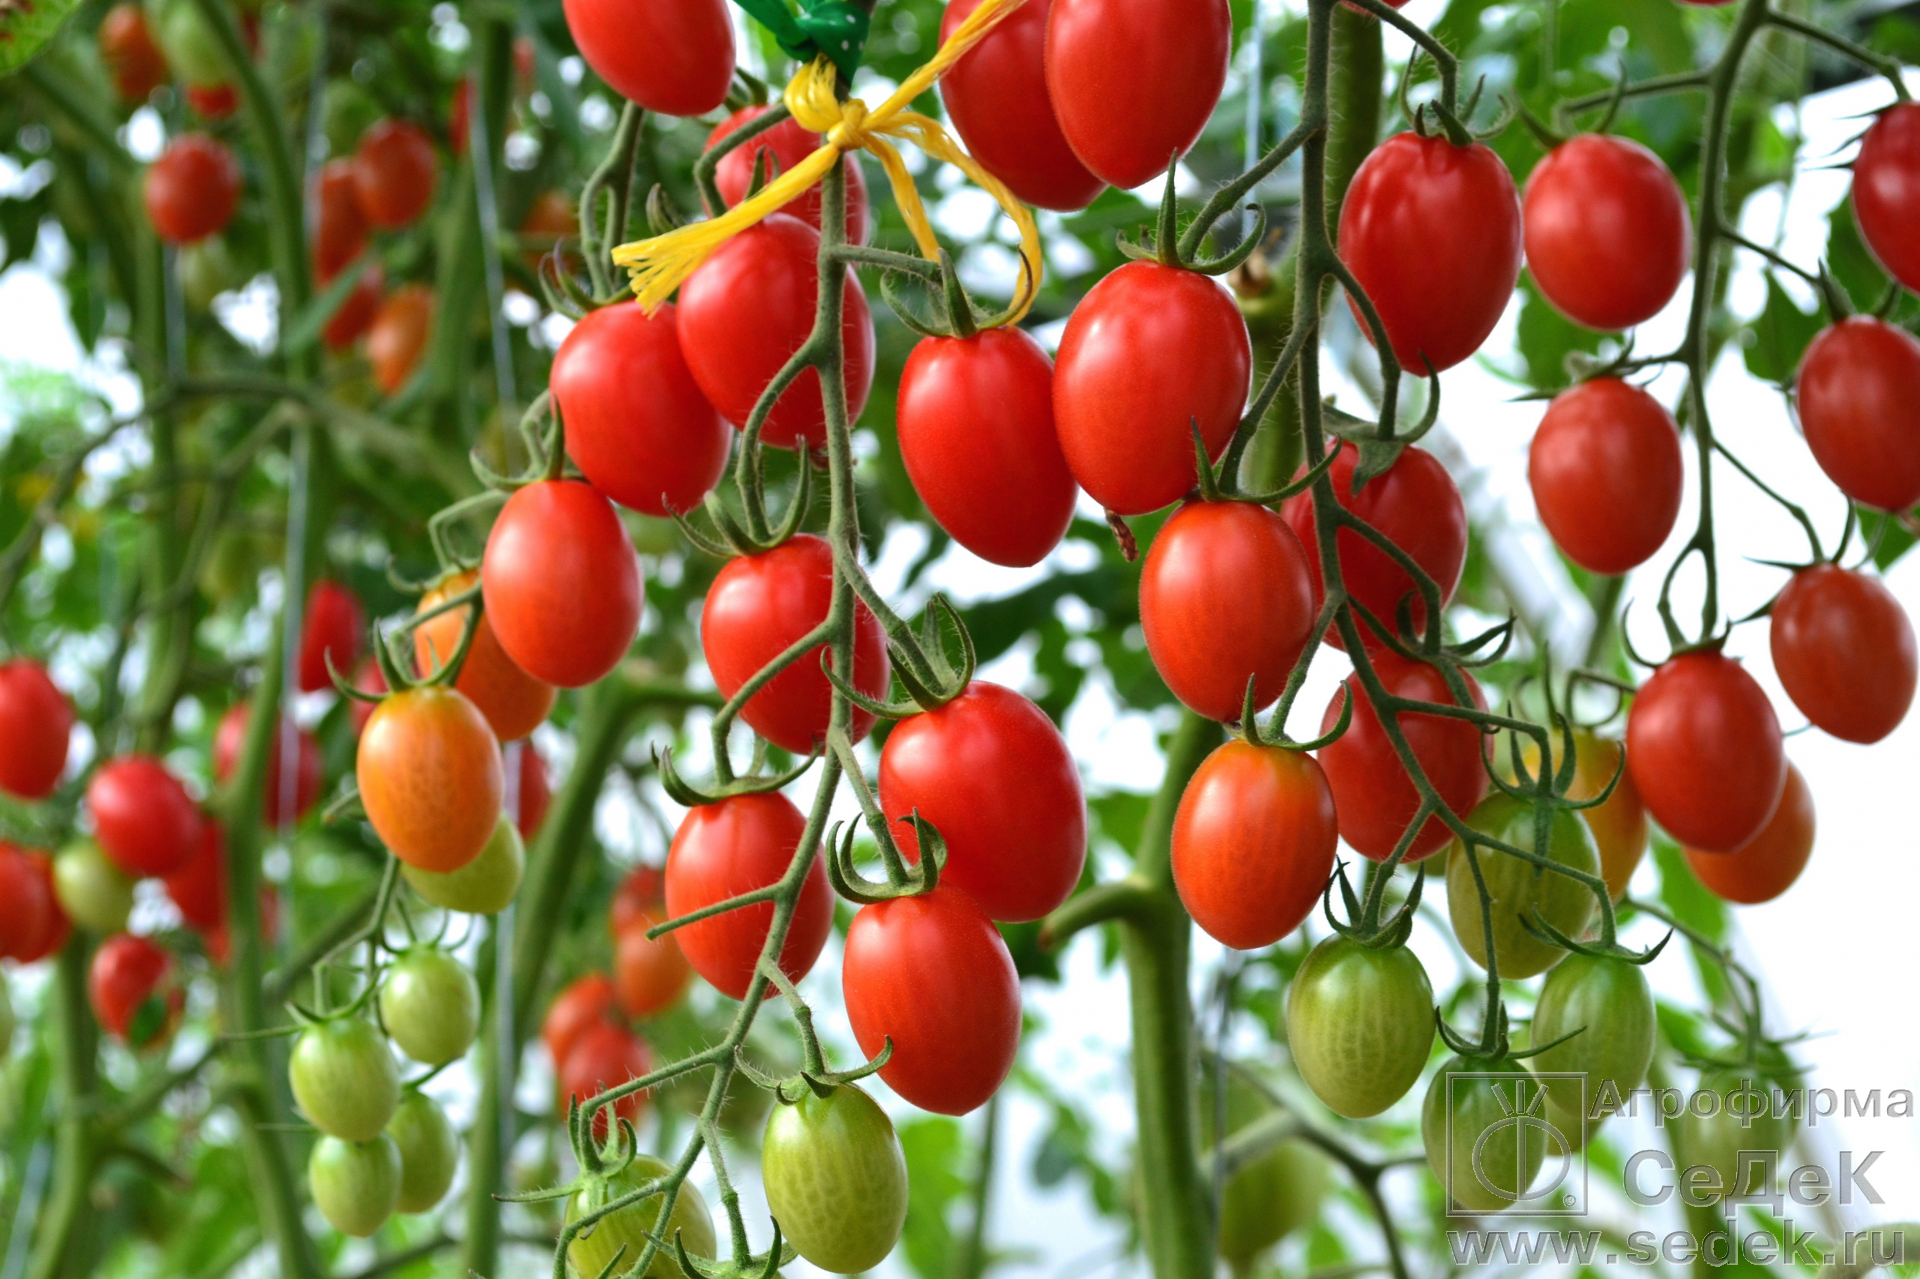 Томат "спрут f1": характеристика и описание сорта помидор с фото, отзывы, помидорное дерево спрут в открытом грунте